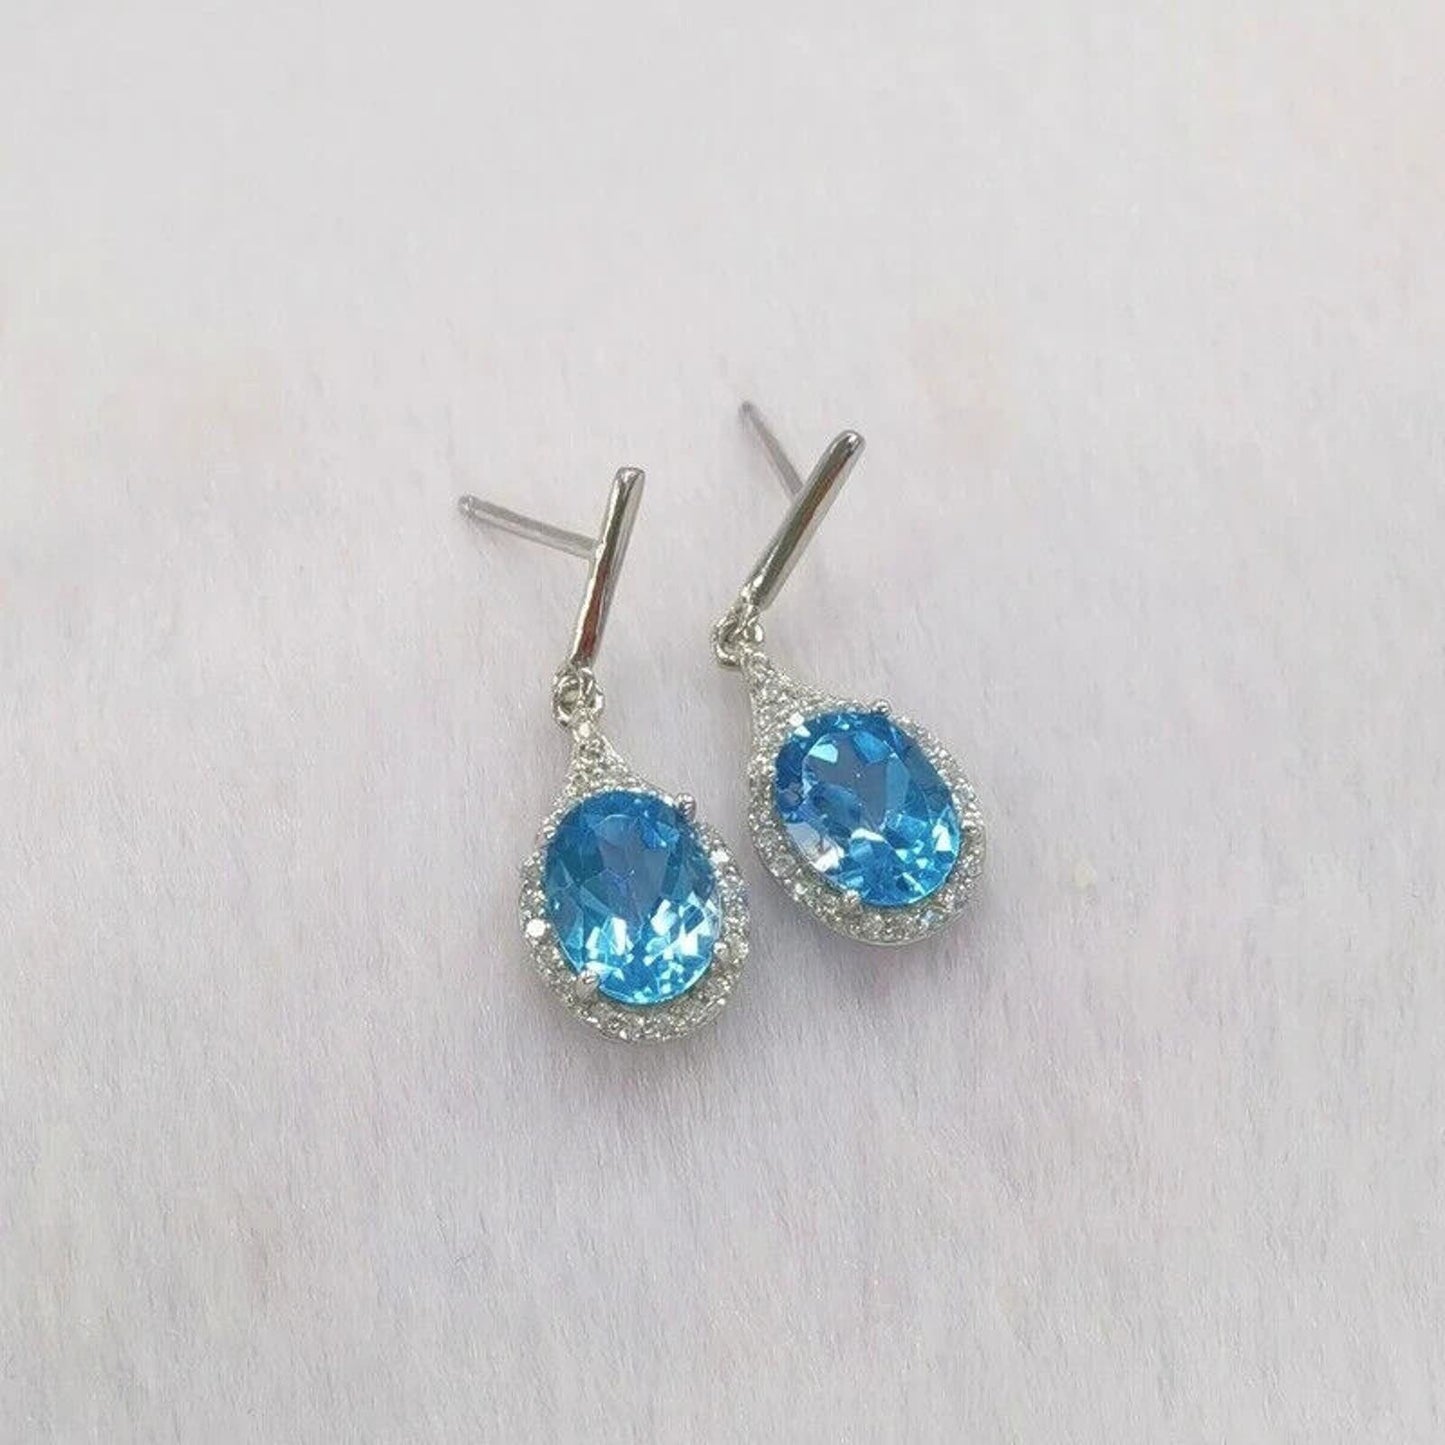 Swiss Blue Topaz Oval Cut Dangle Earrings 6x8mm